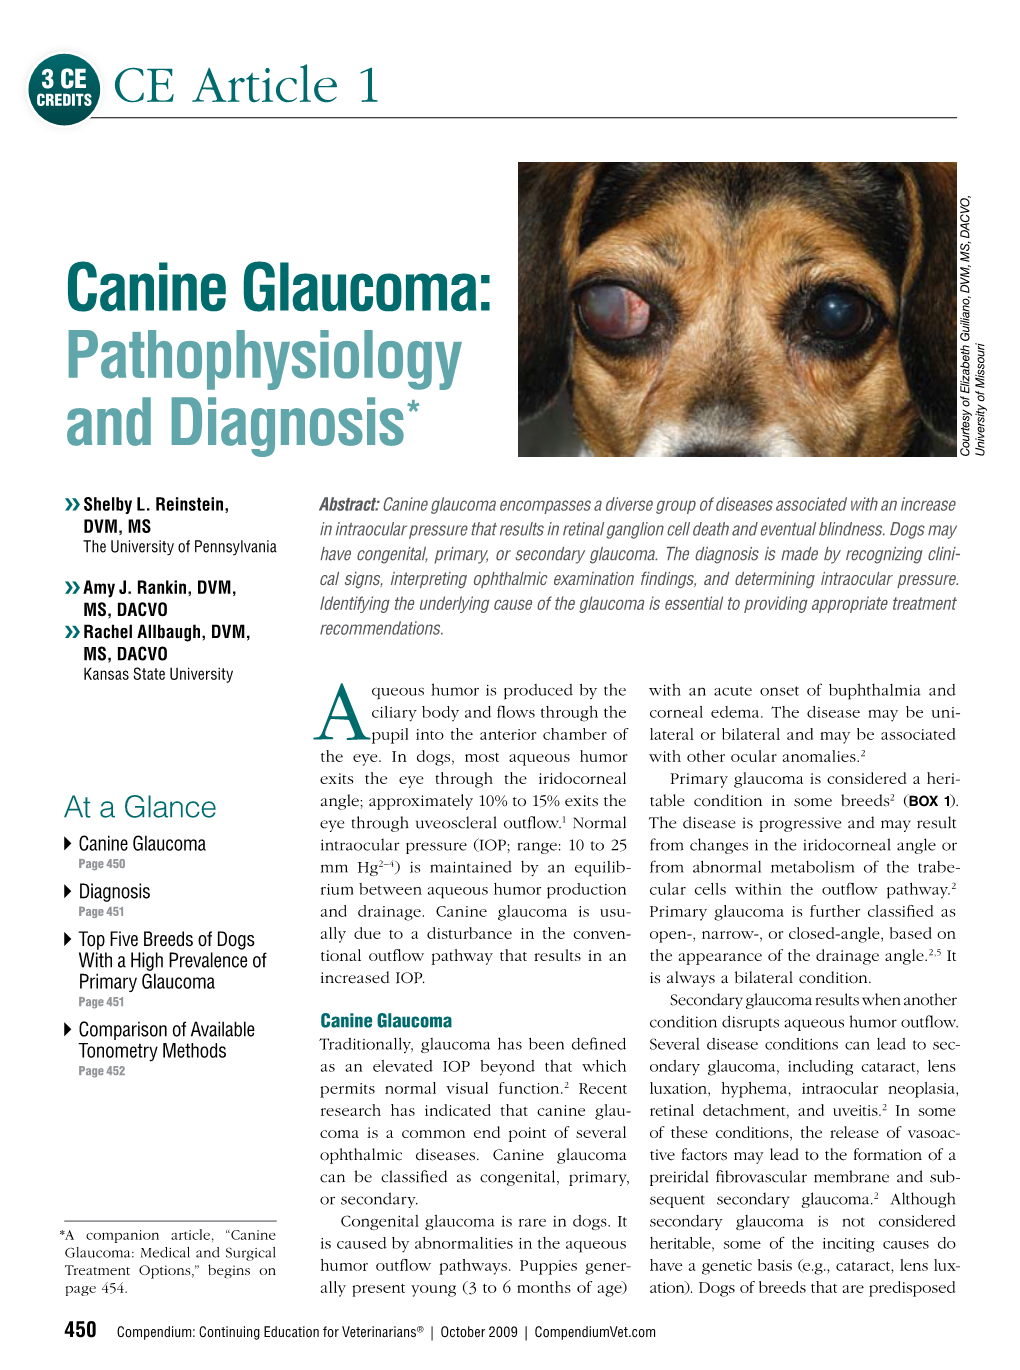 Canine Glaucoma: Pathophysiology * University of Missouri and Diagnosis DACVO, MS, DVM, of Elizabeth Guiliano, Courtesy